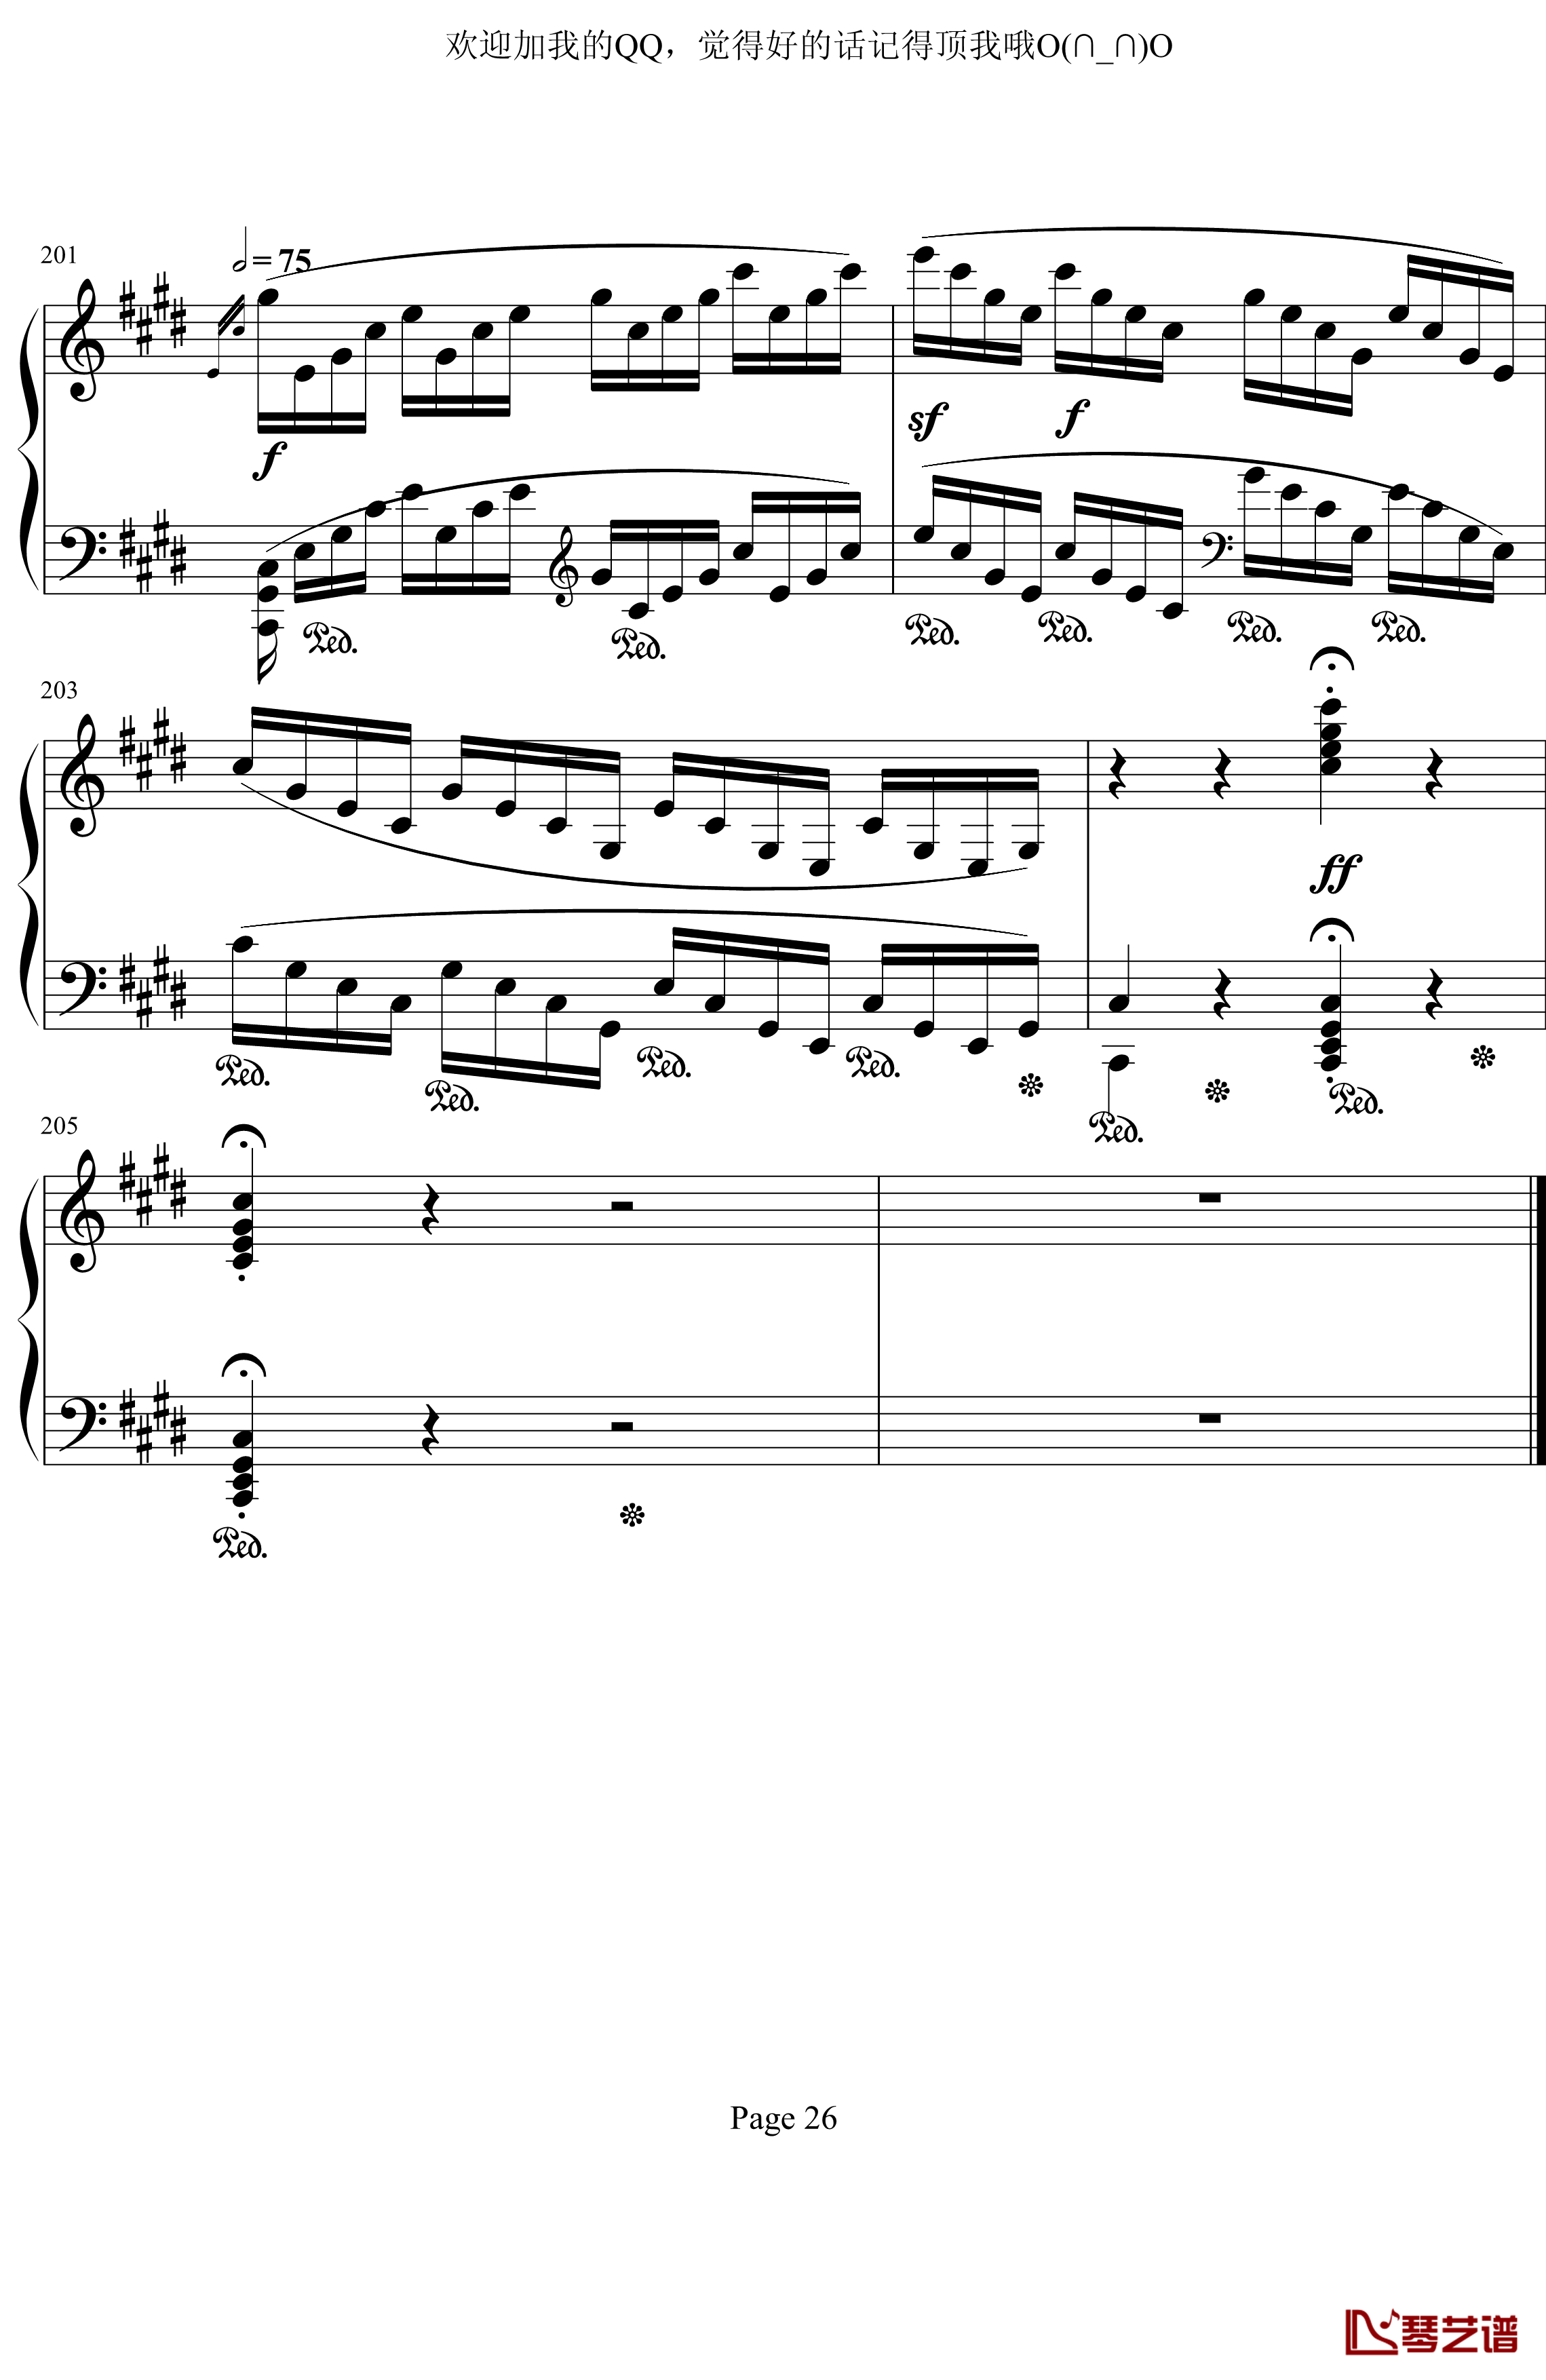 月光奏鸣曲第三乐章钢琴谱-贝多芬-beethoven26